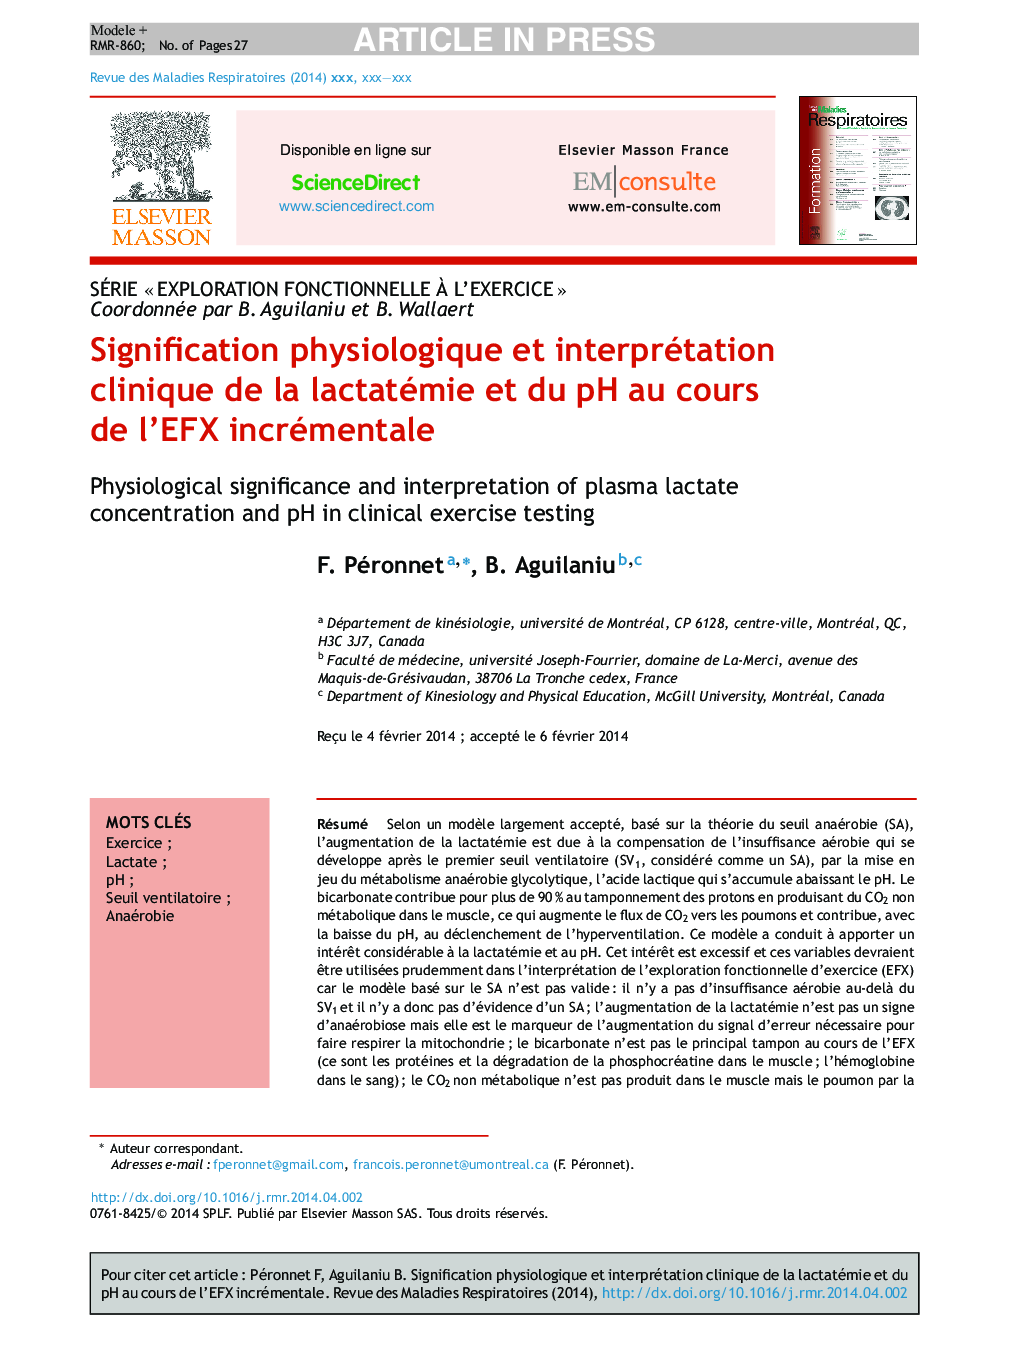 Signification physiologique et interprétation clinique de la lactatémie et du pH au cours de l'EFX incrémentale